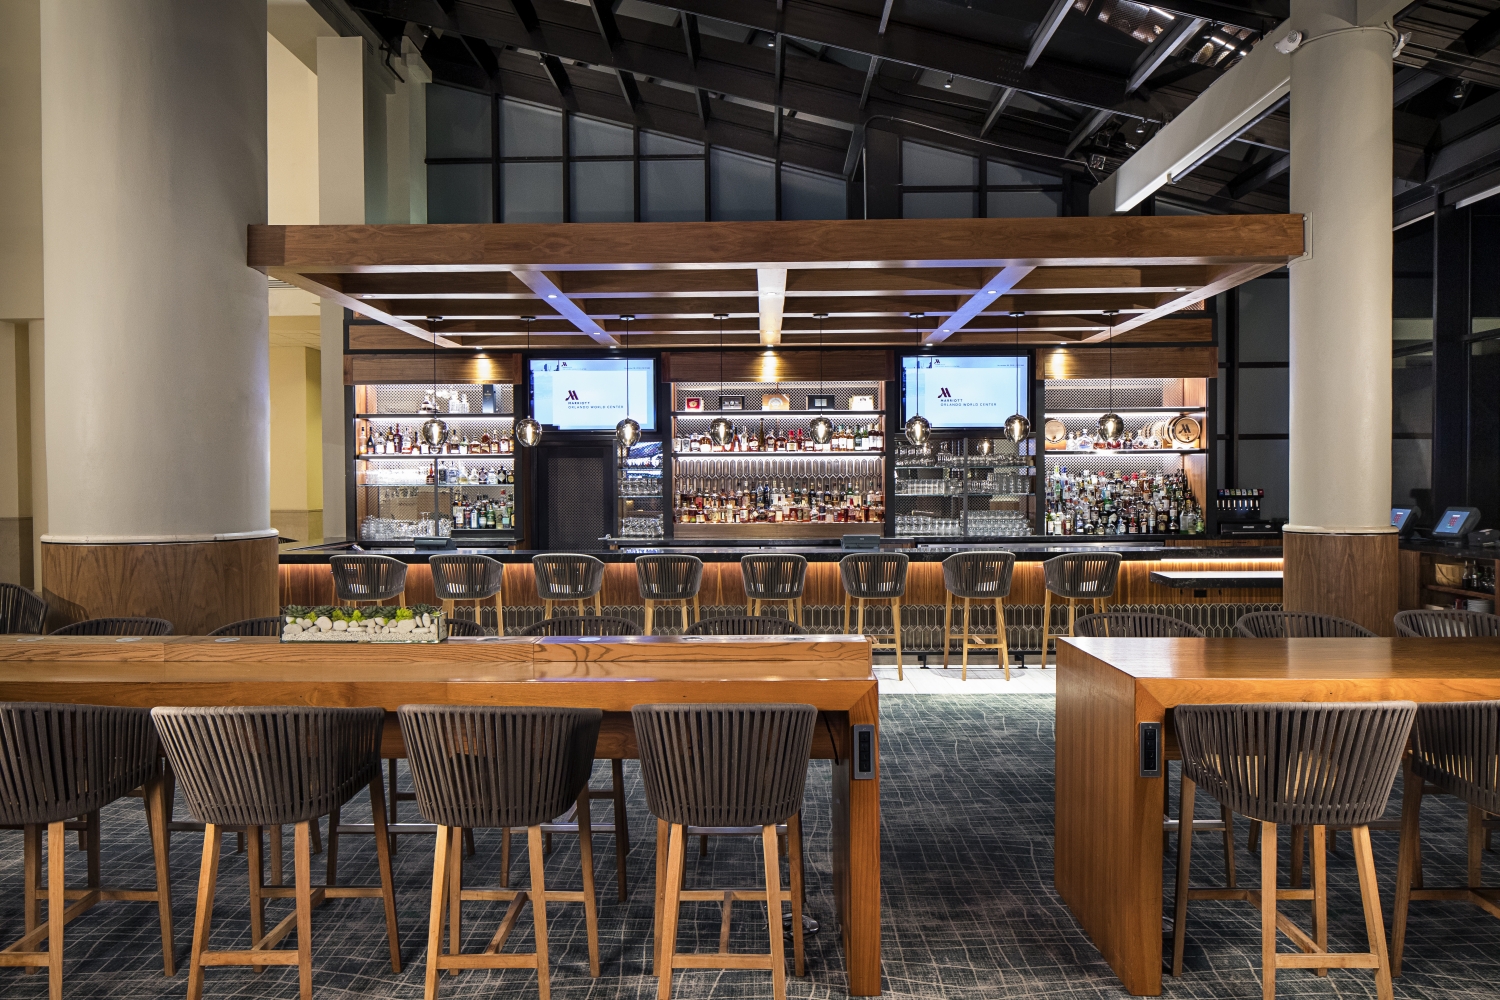 Orlando World Center Marriott - Lobby Bar/Registration